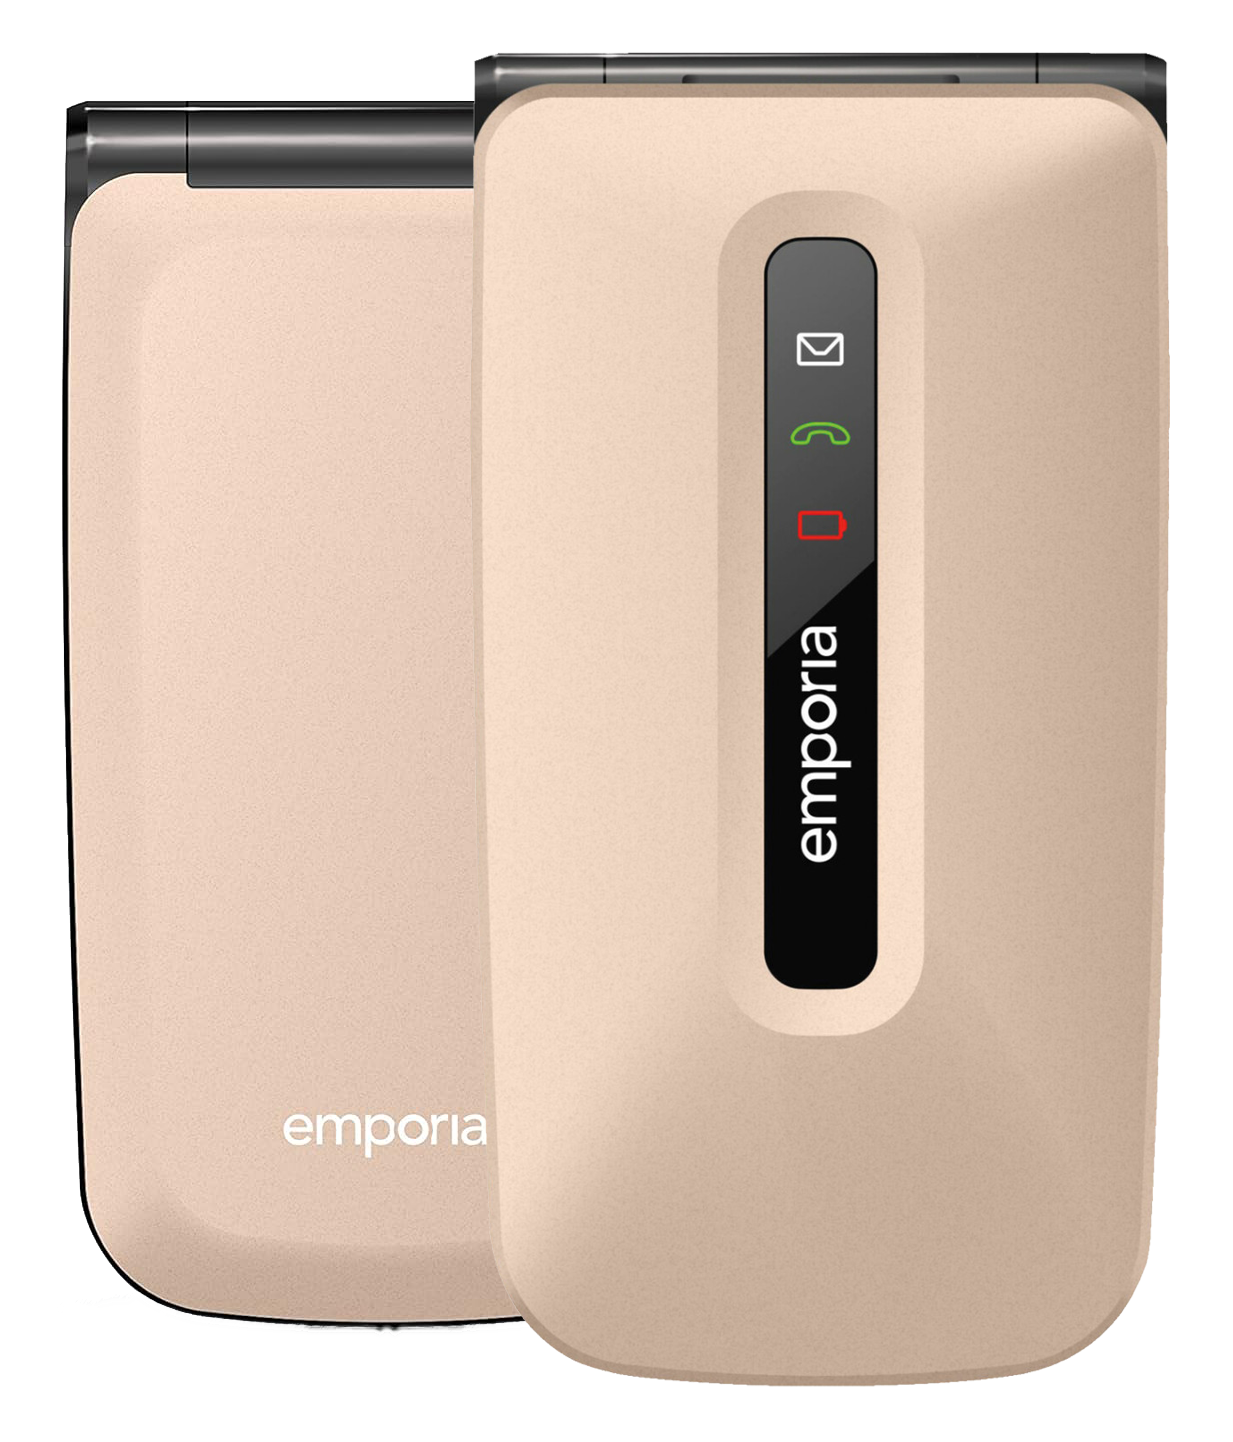 Emporia FLIP Dual-SIM gold - Ohne Vertrag